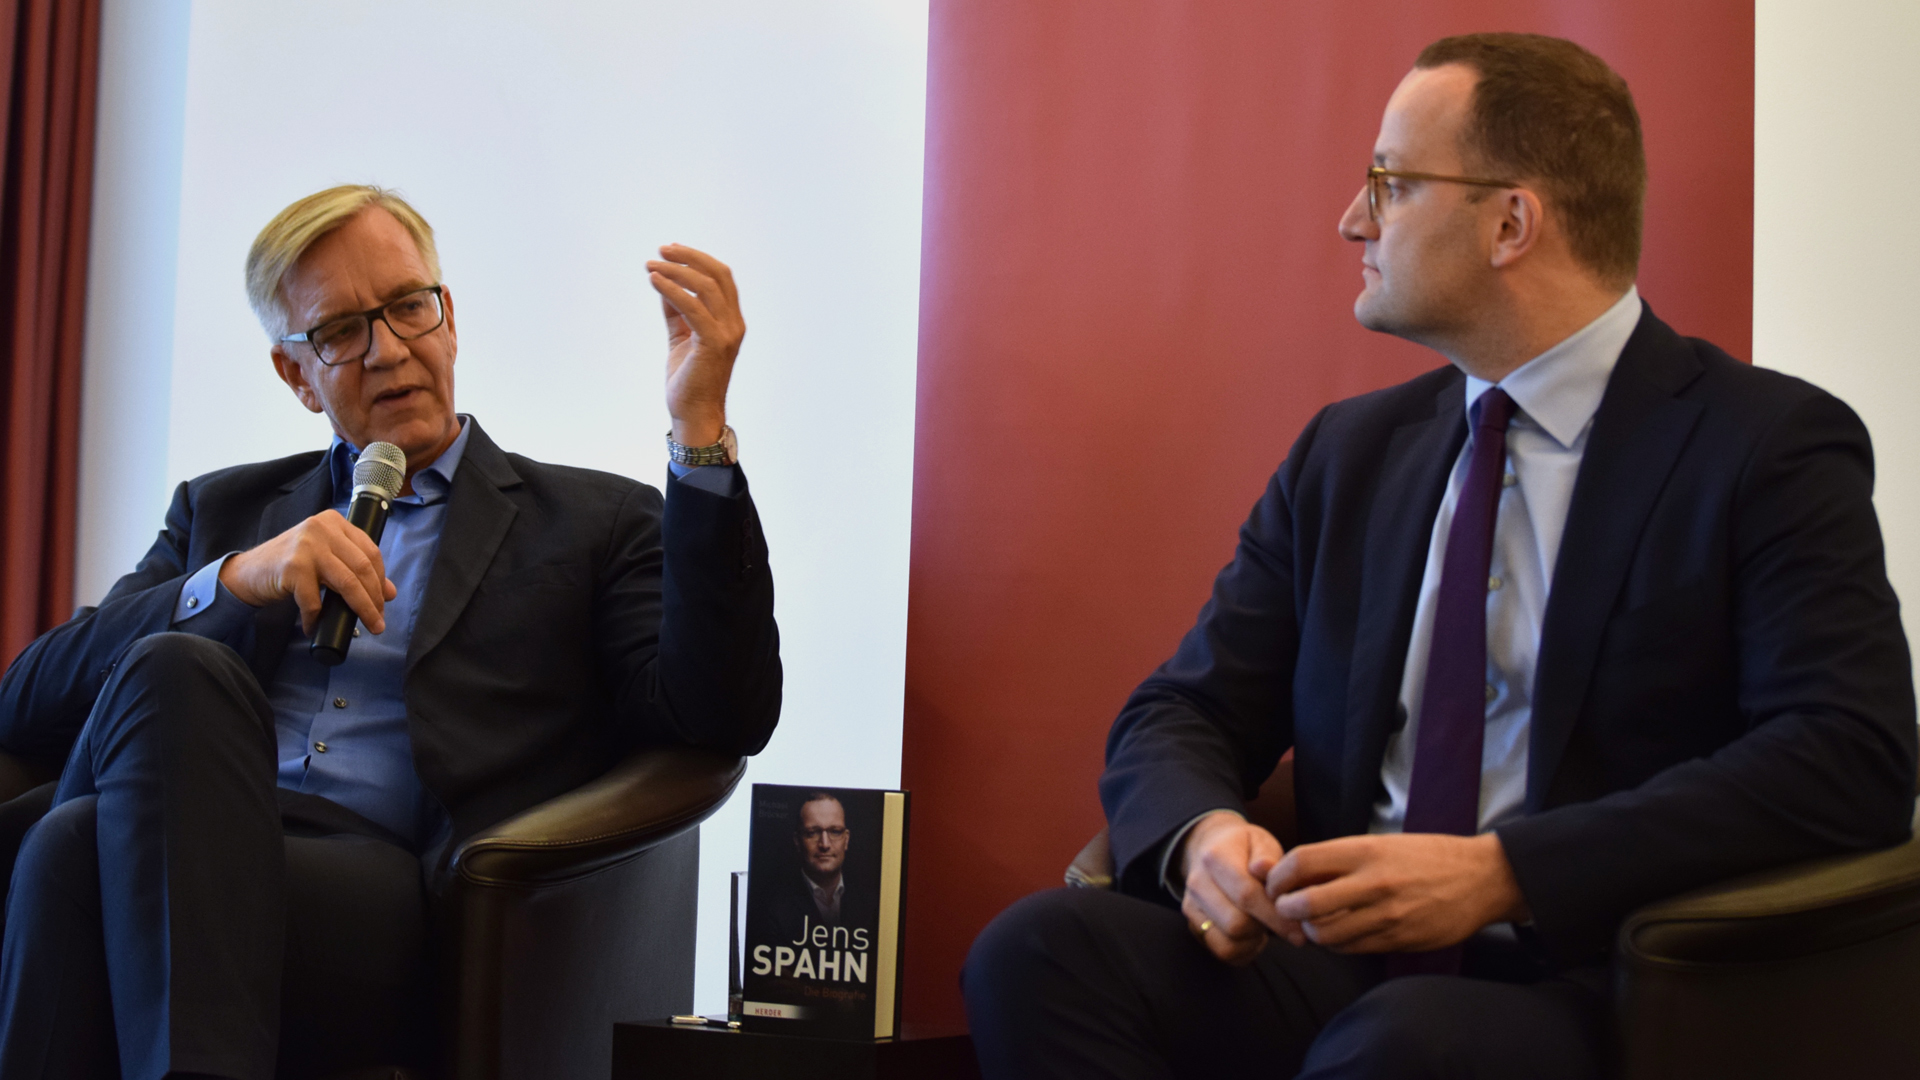 Politische Gegner mit Sympathie füreinander: (v.l.) Linken-Fraktionschef Diemtar Bartsch, Bundesgesundheitsminister Jens Spahn (CDU)